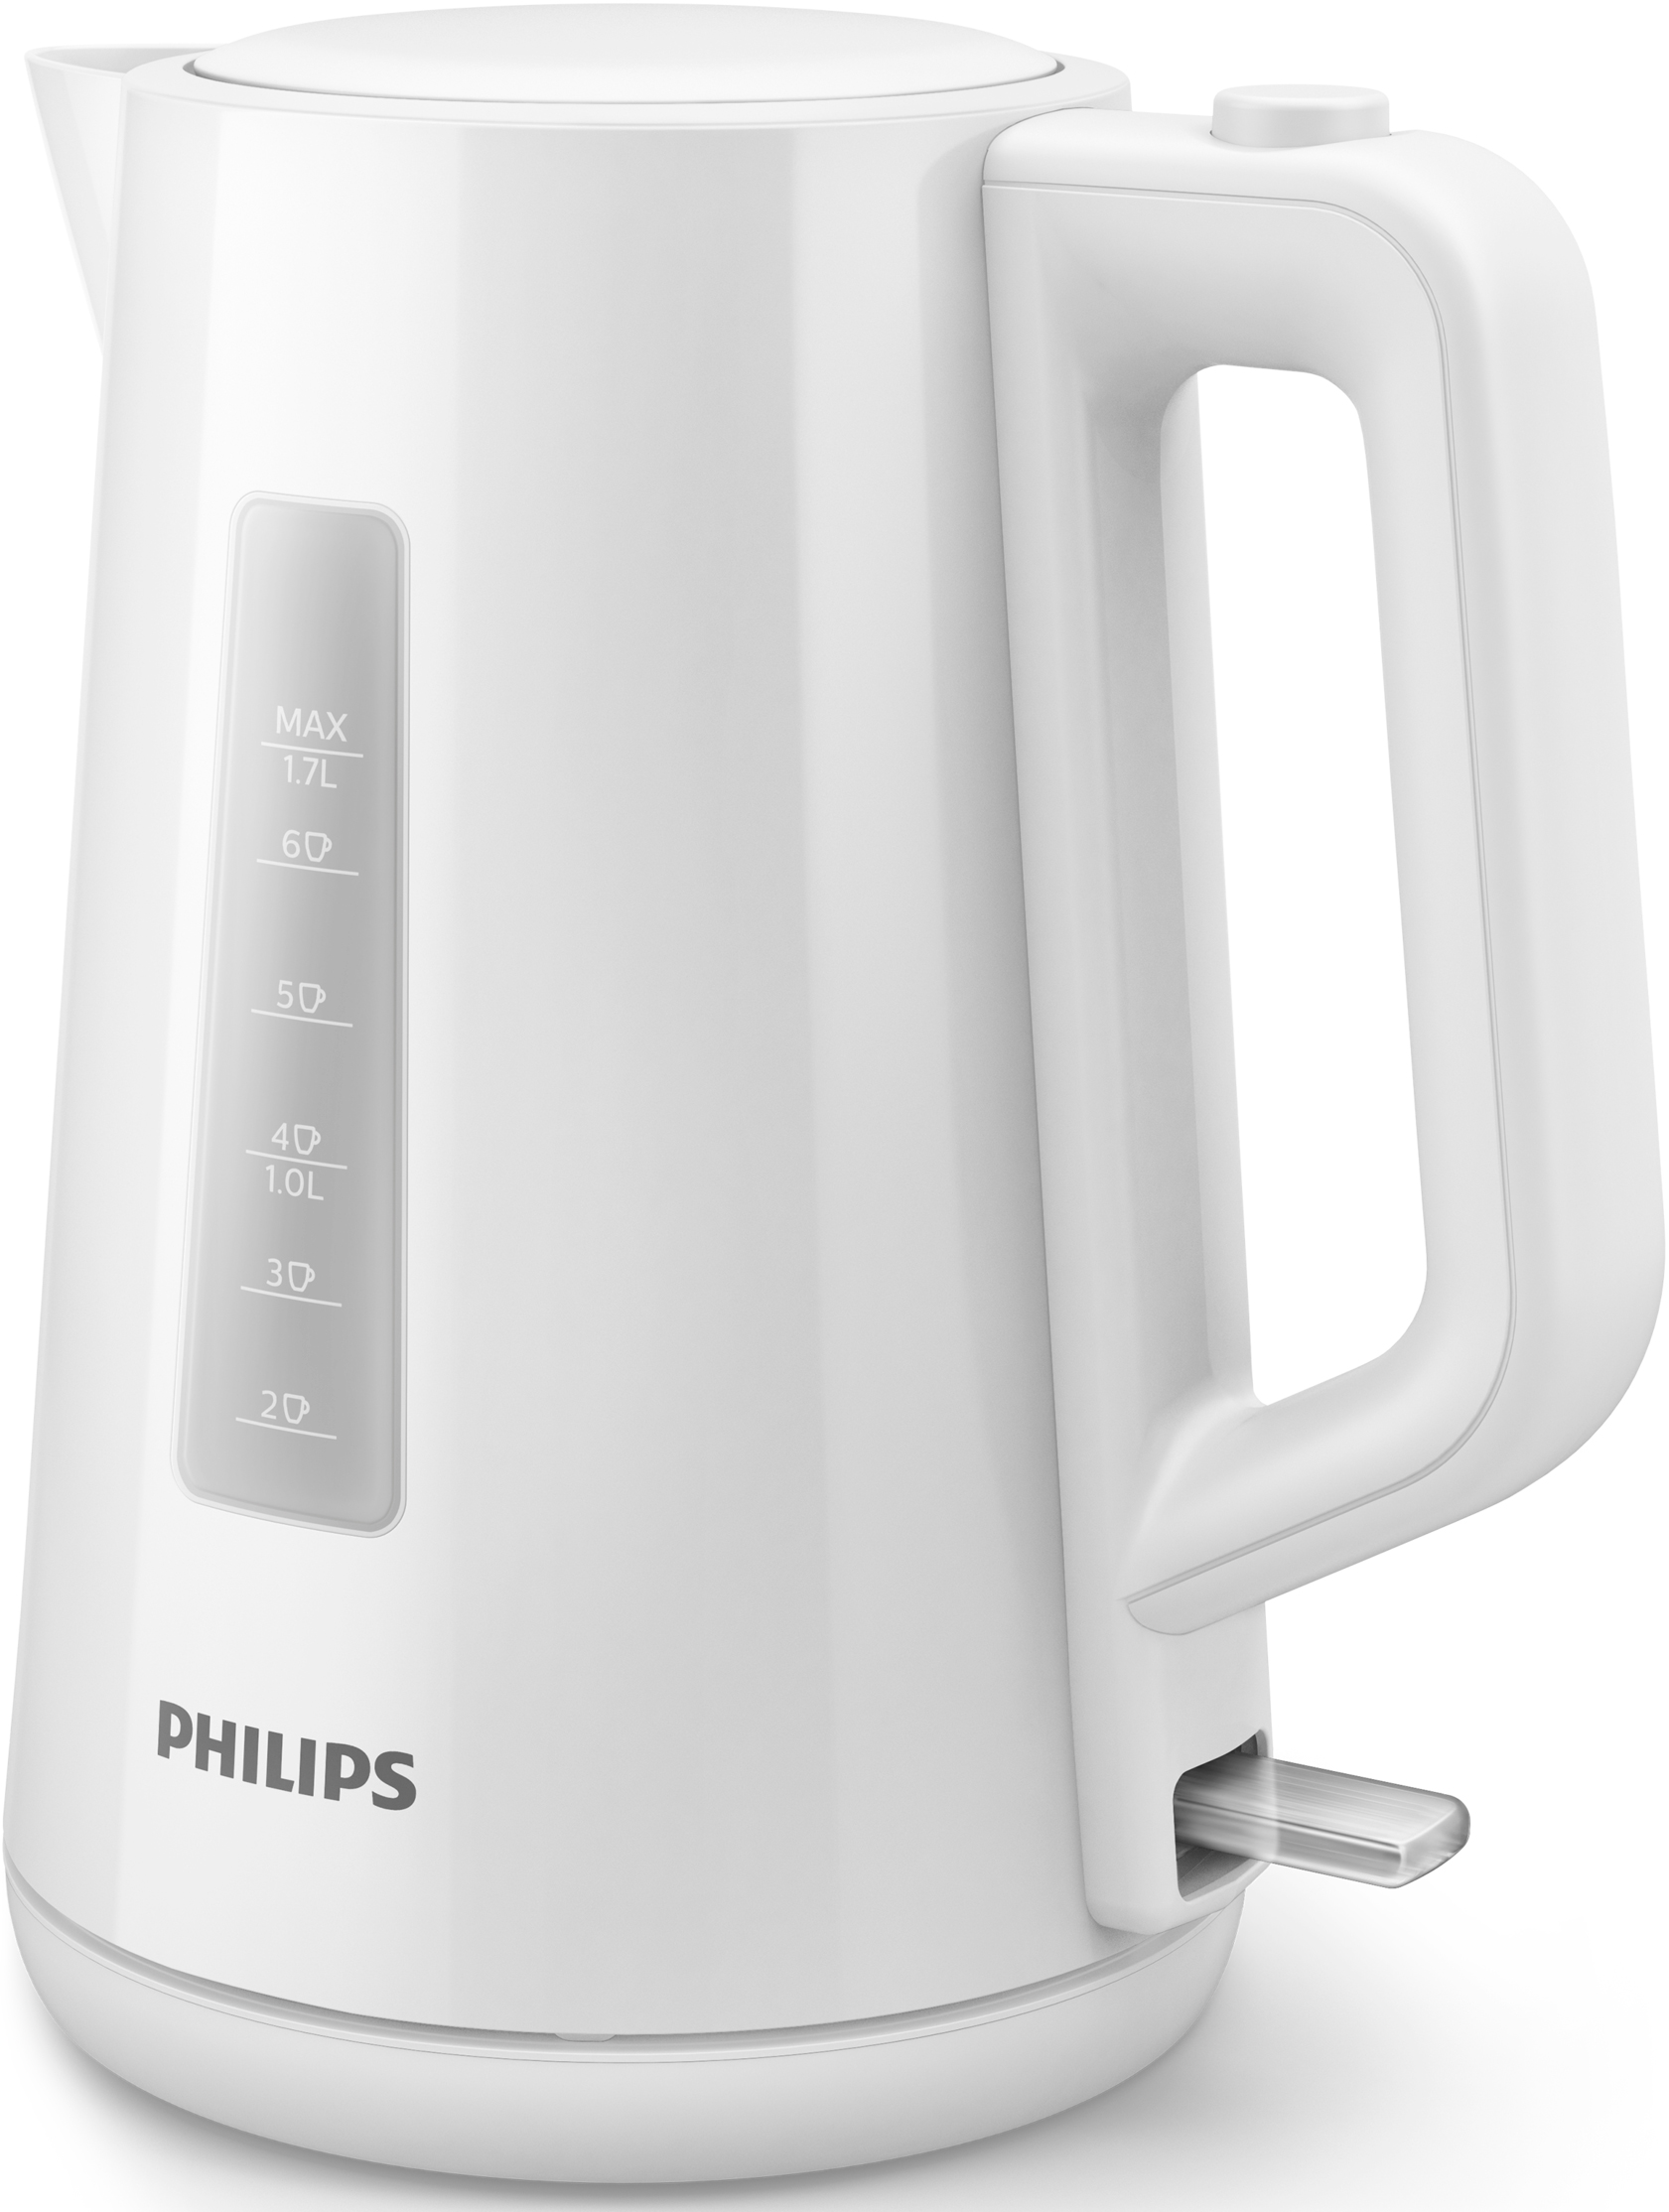 Отзывы электрочайник Philips HD9318/00 в Украине